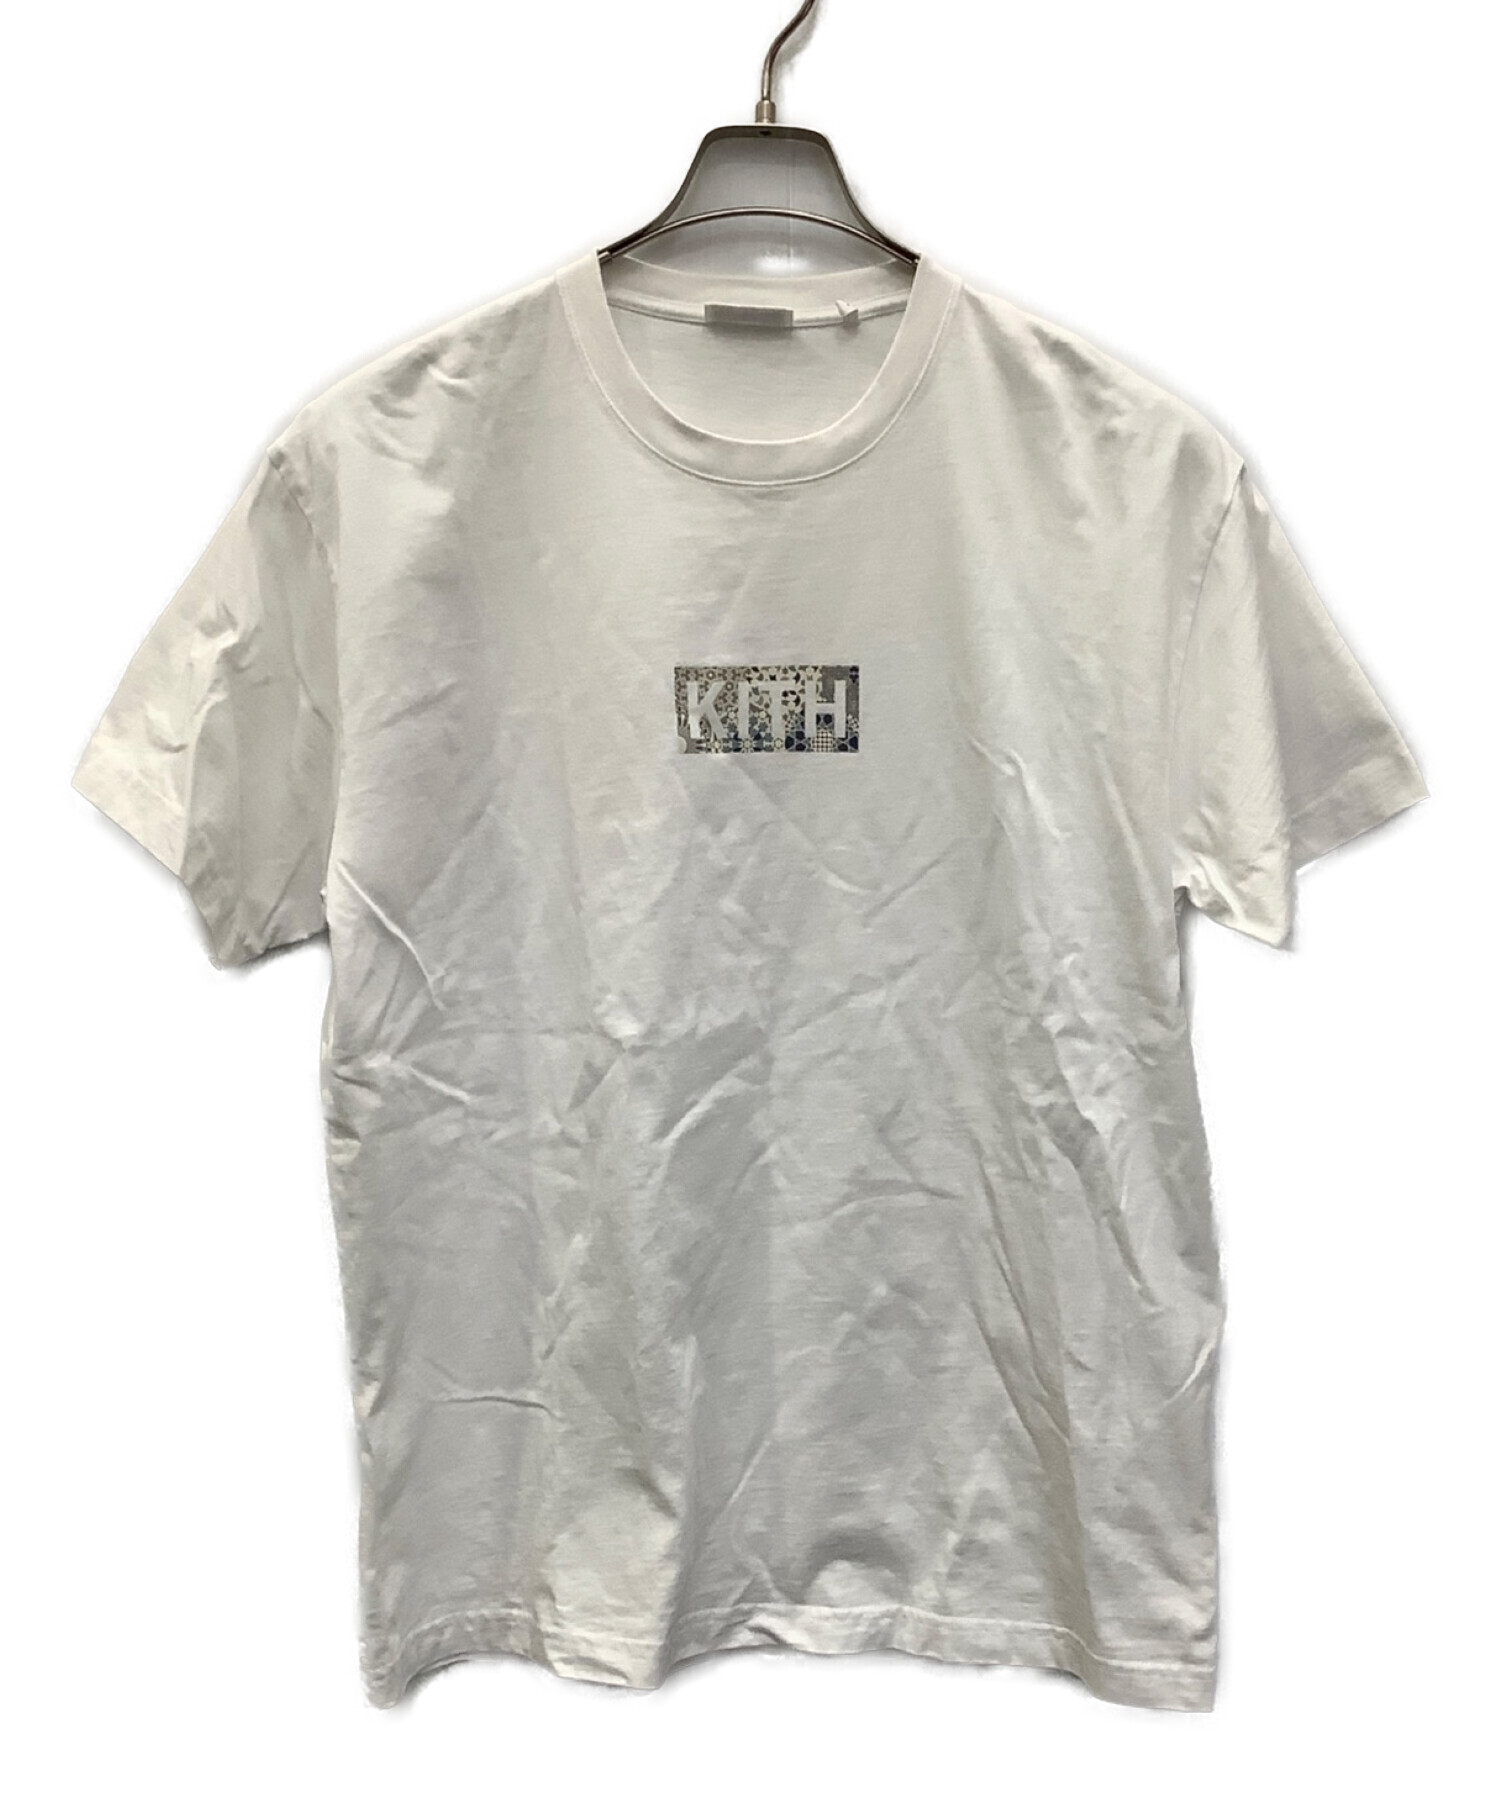 KITH (キス) ボックスプリントTシャツ ホワイト サイズ:L